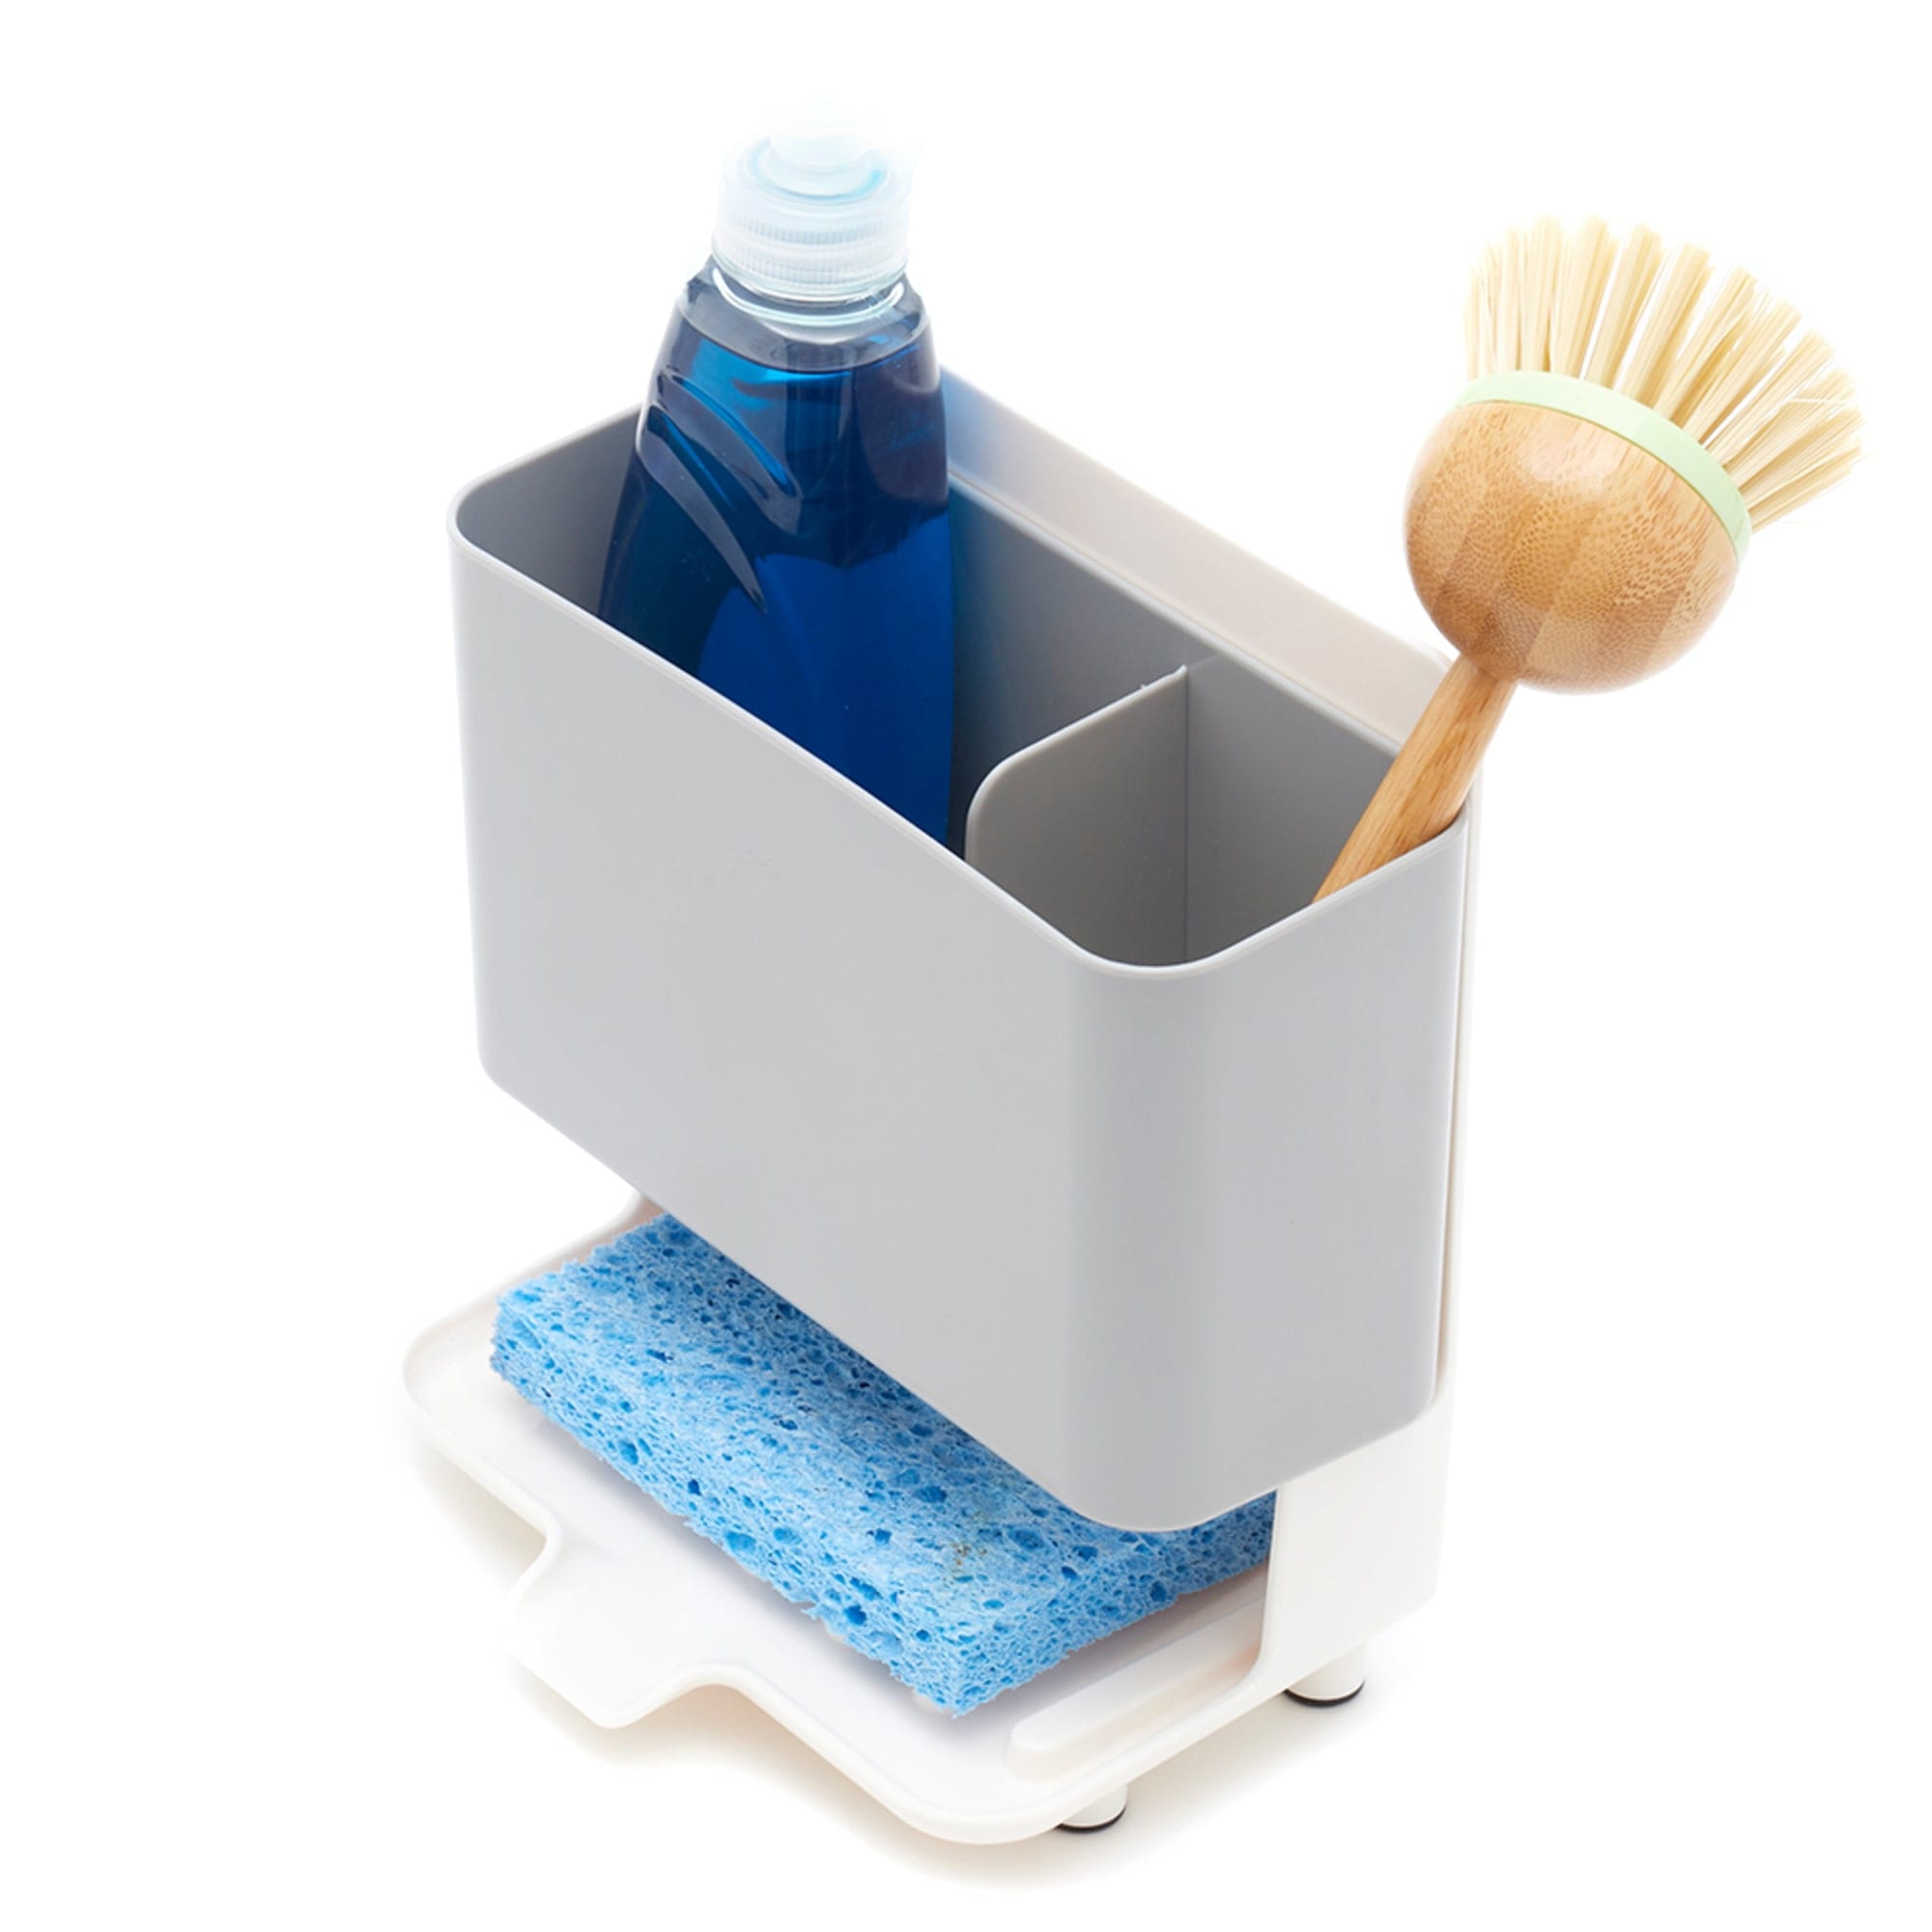 Sponge Holder For Kitchen Sink, Kitchen Sink Caddy Organizer With